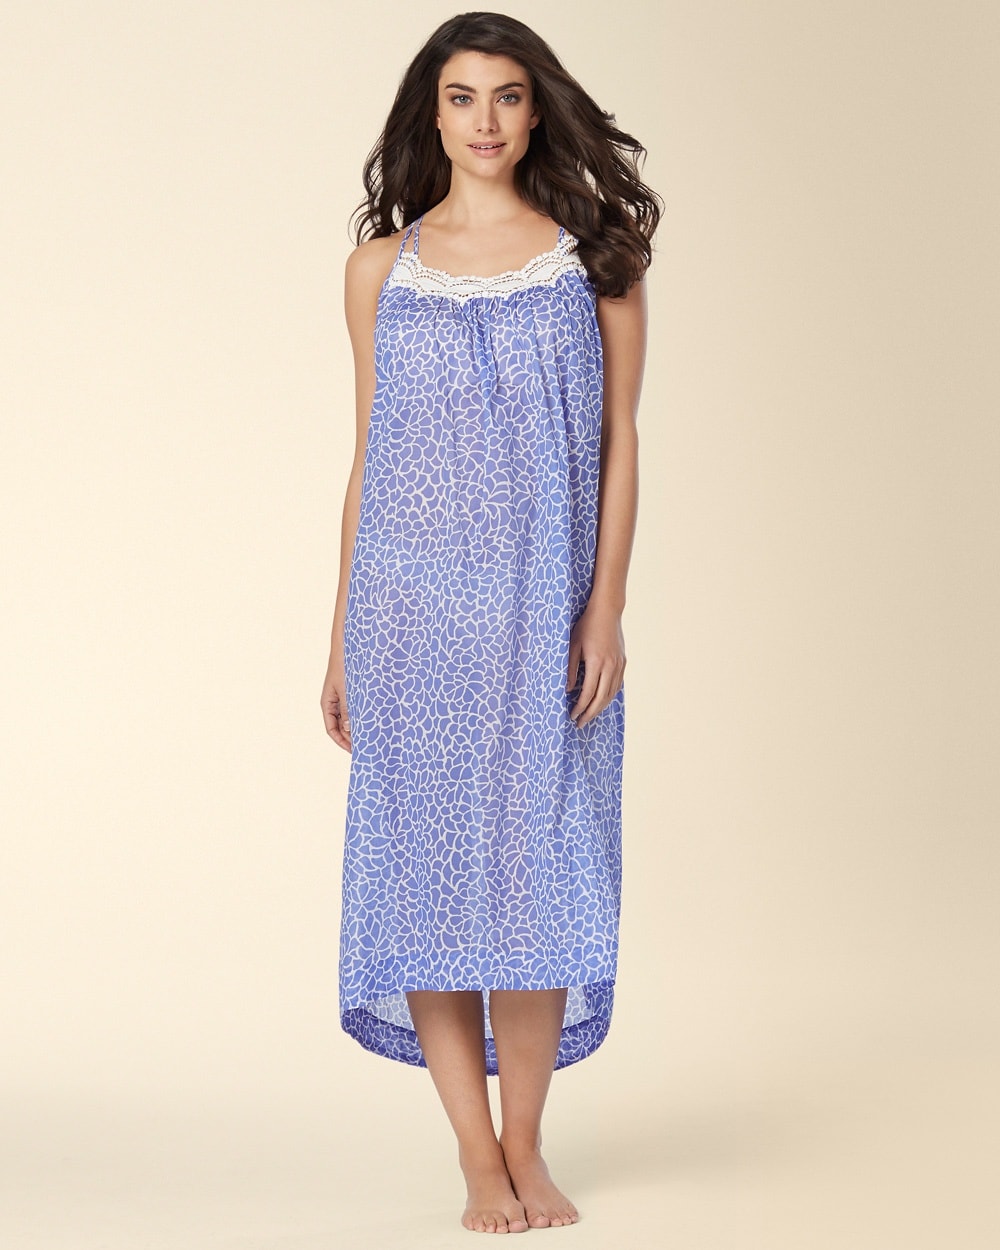 Oscar de la Renta Mosaic Petals Long Cotton Nightgown Blue Lily Print